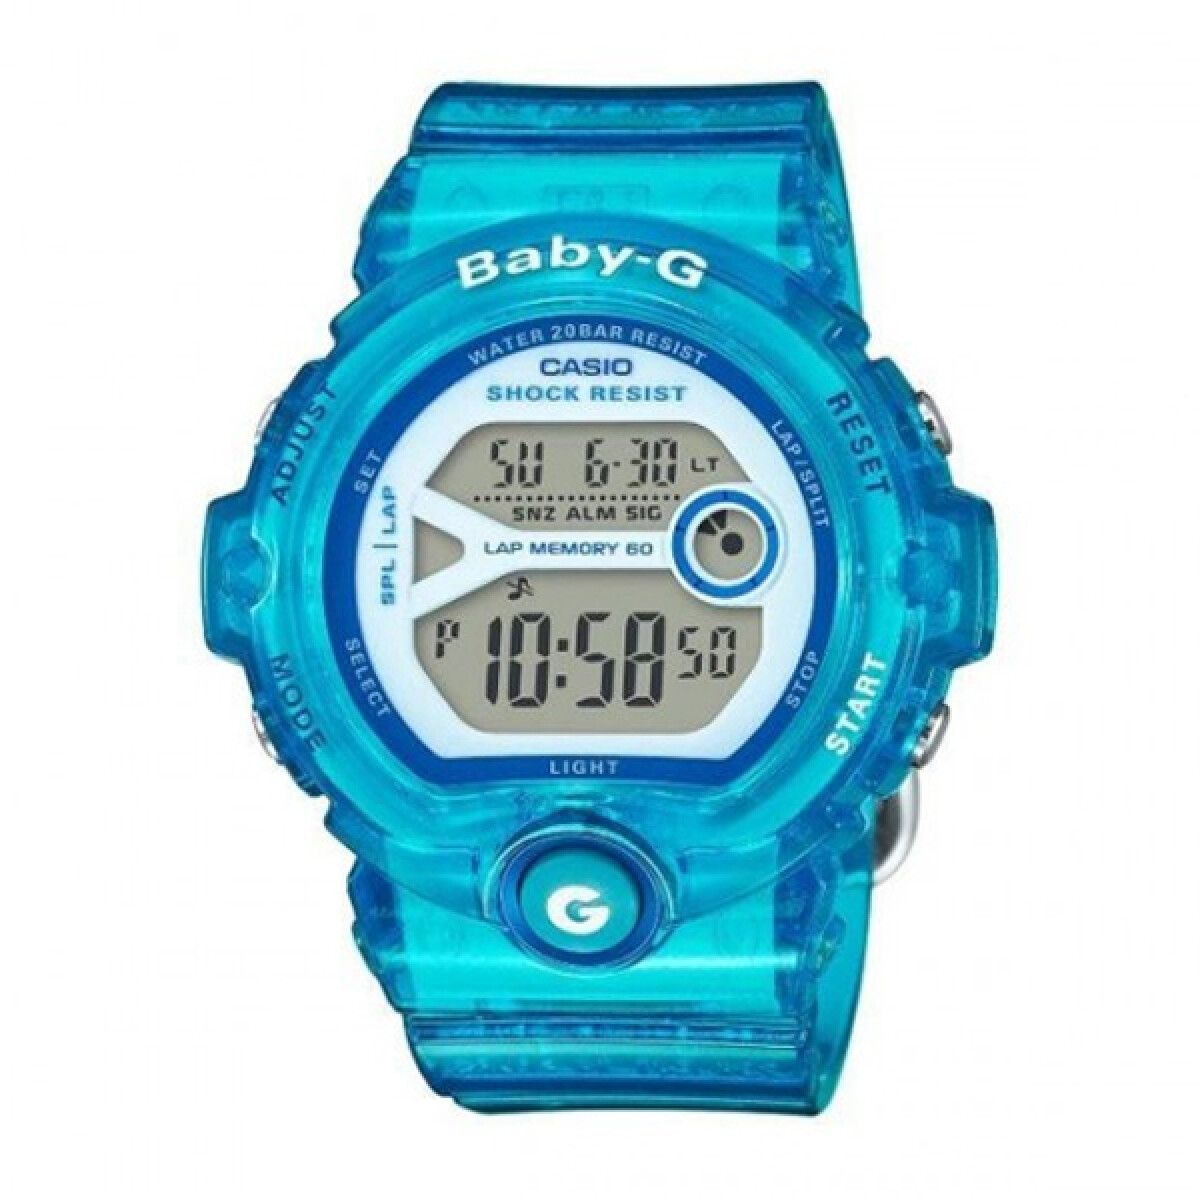 Oiritaly Reloj - Quarzo - Niño - Casio - BG-1200-9VER - Baby-G - Relojes